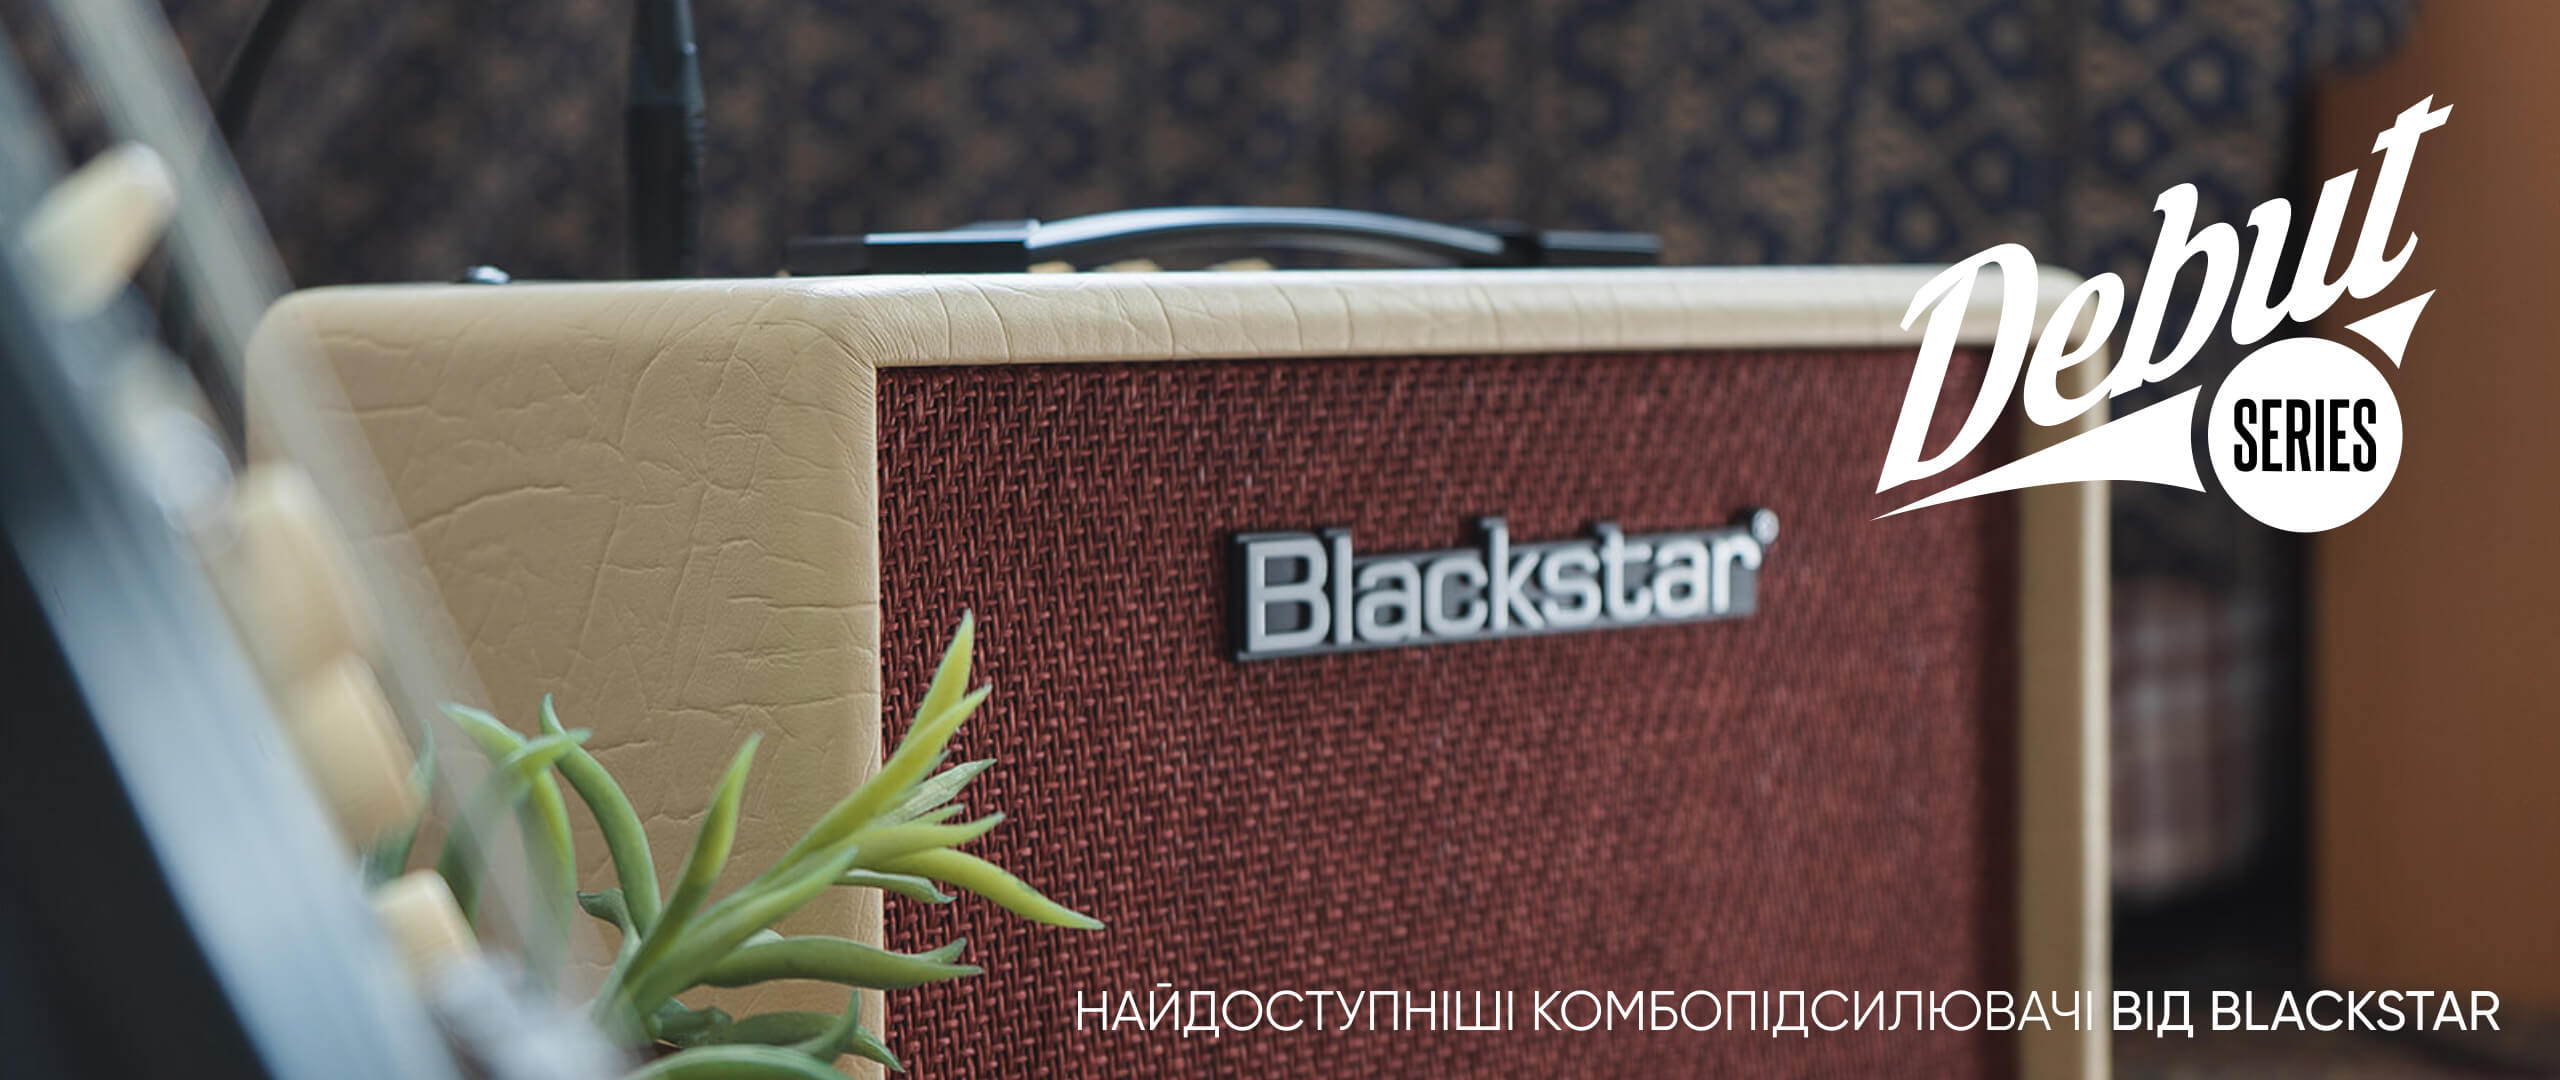 Blackstar Debut